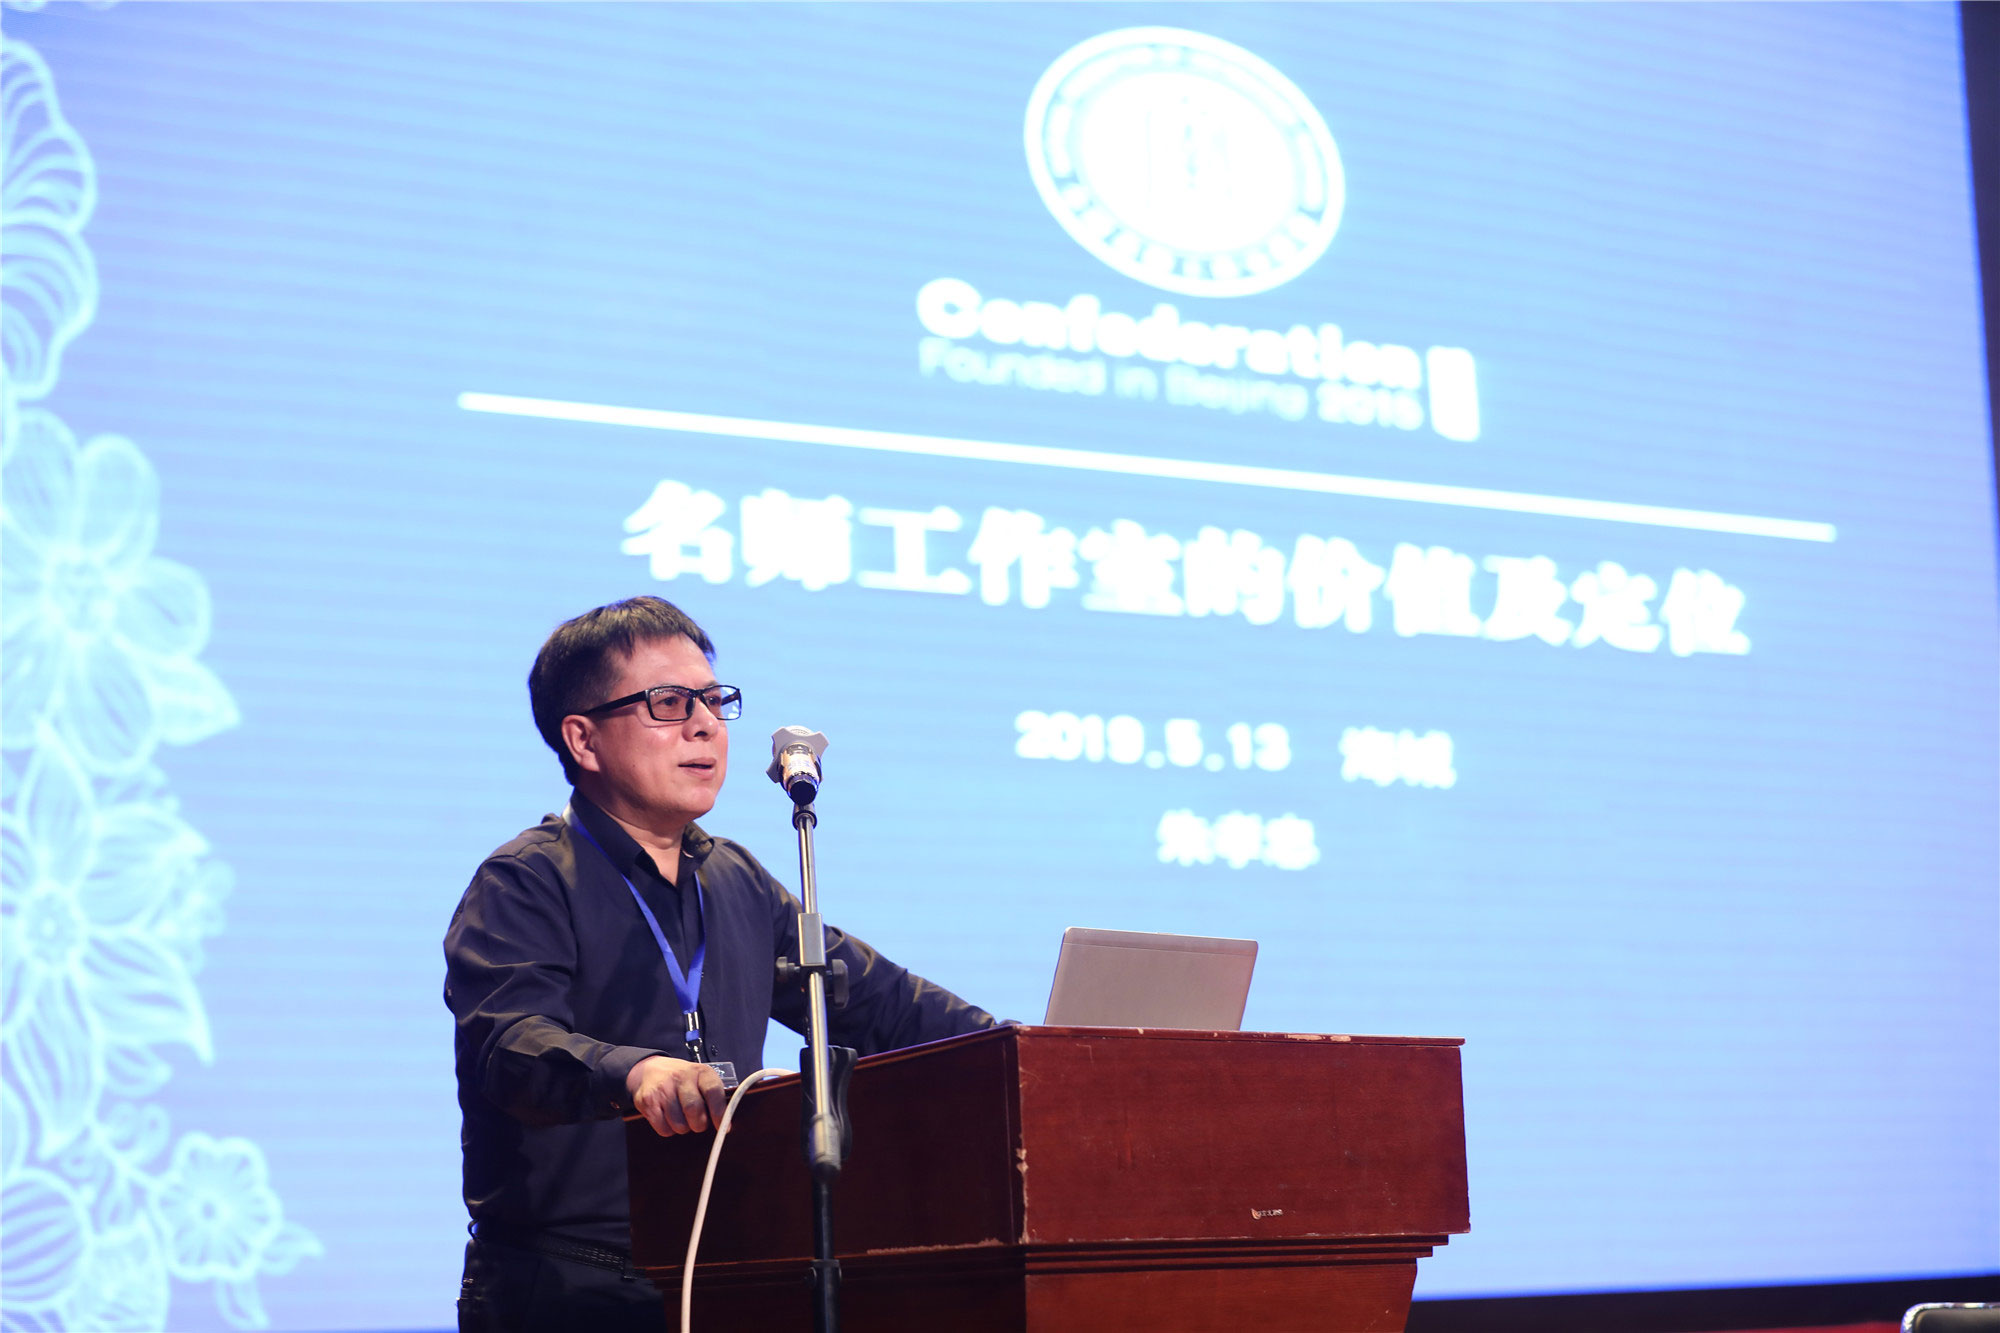 在第三天下午闭幕式环节，北京中教市培教育研究院院长朱孝忠作专题报告：名师工作室的价值与定位。